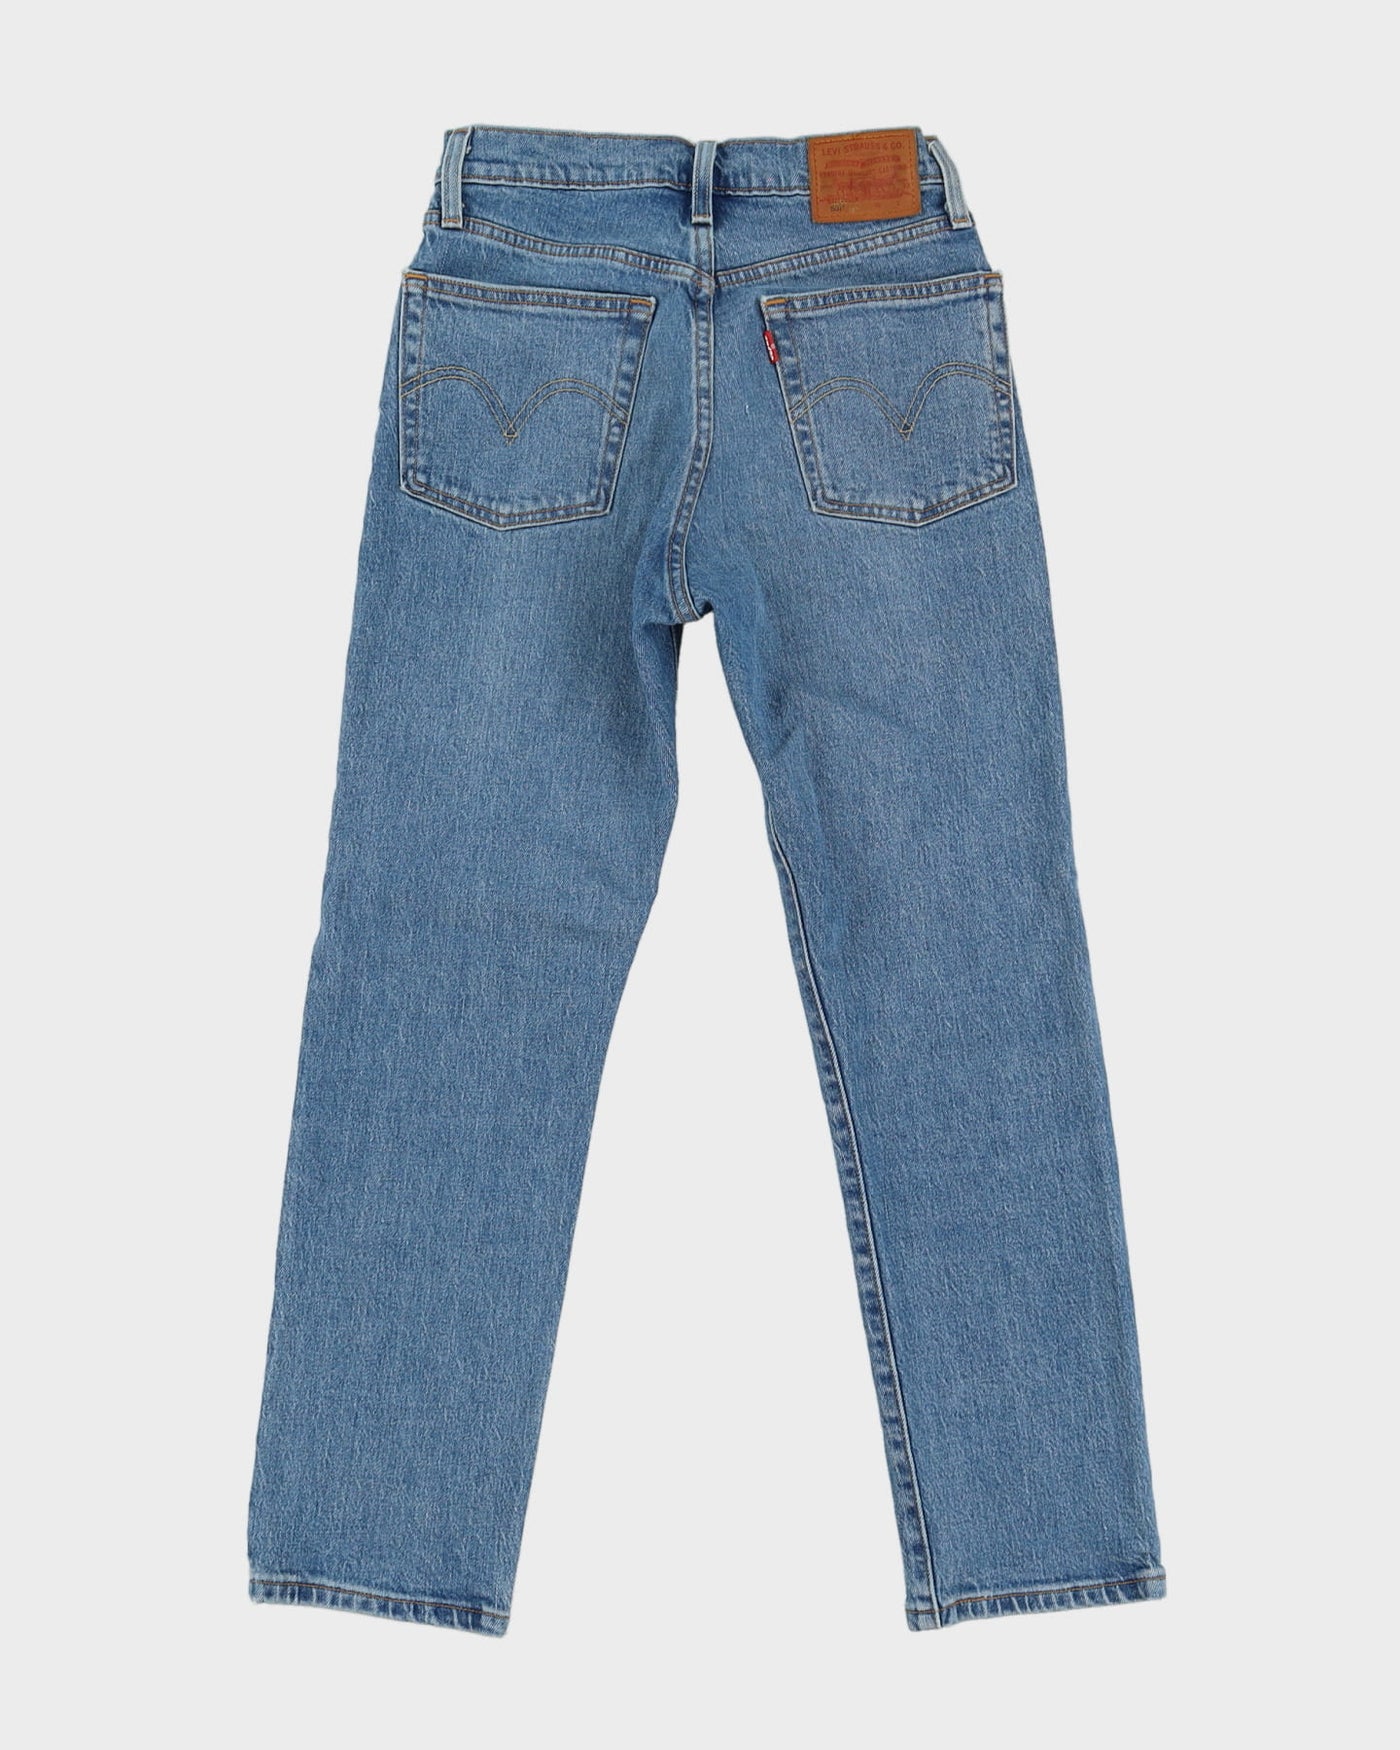 Levi's 501 Big E Re-Pro Blue Jeans - W26 L26